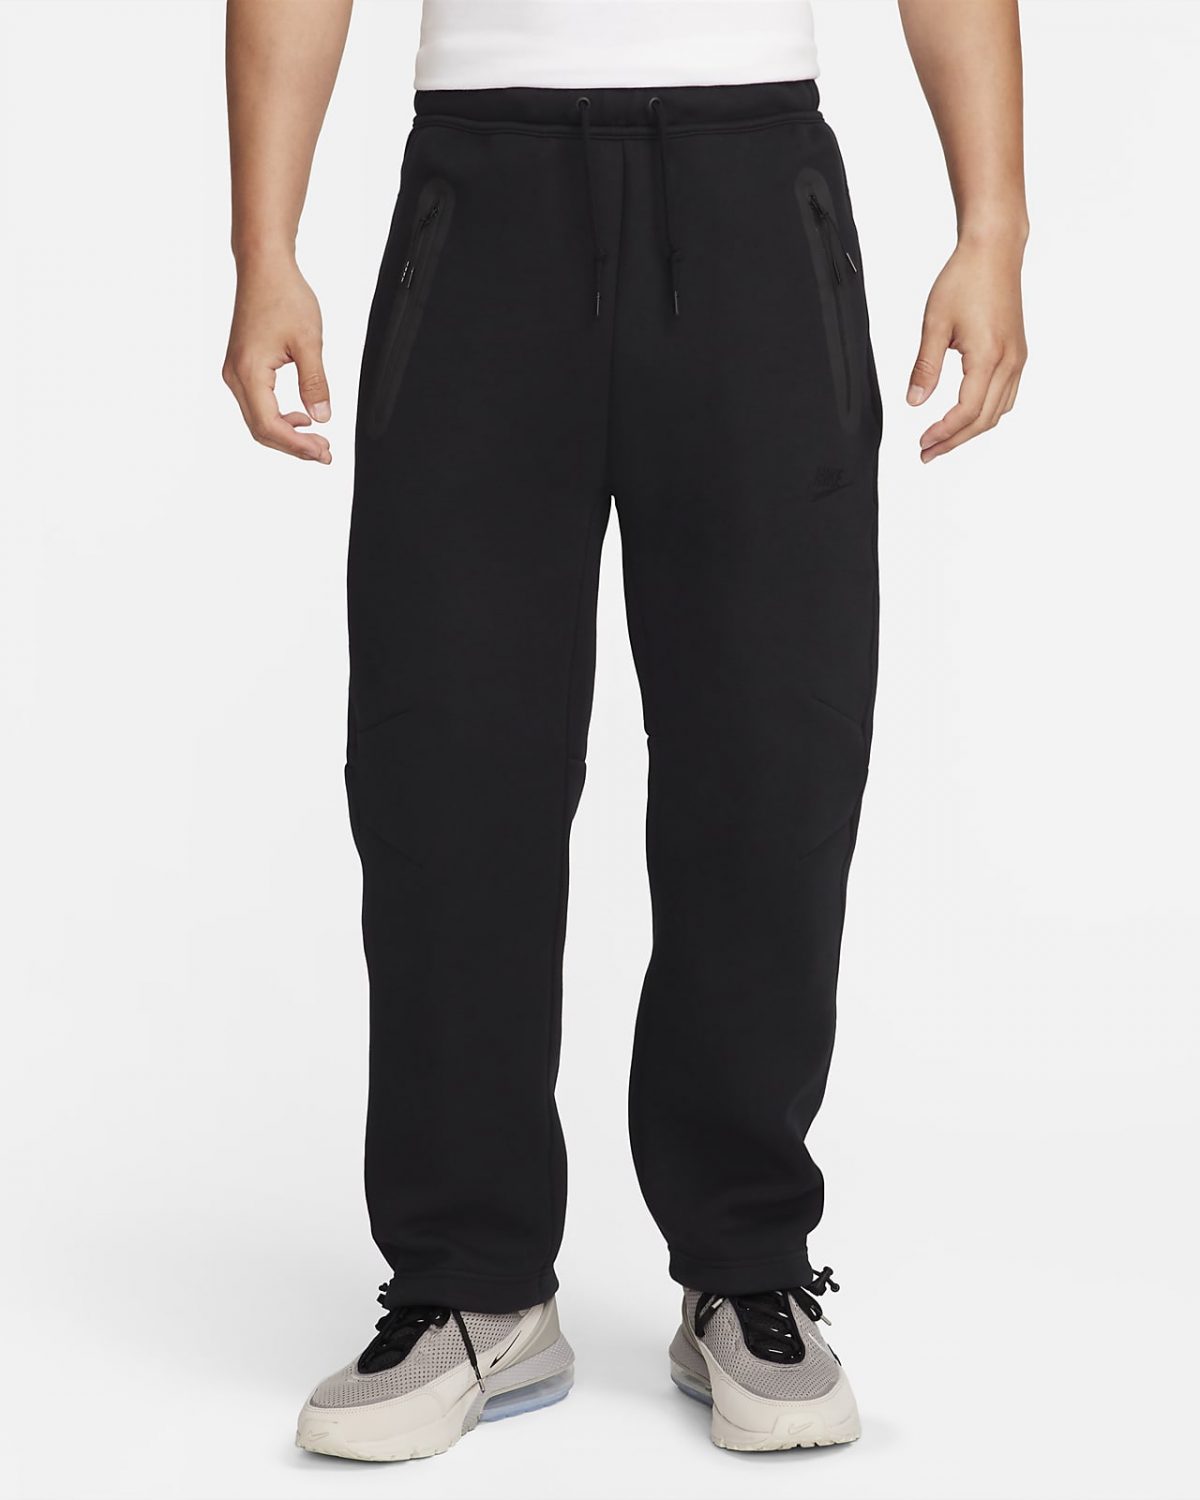 Мужские брюки Nike Sportswear Tech Fleece черные фото